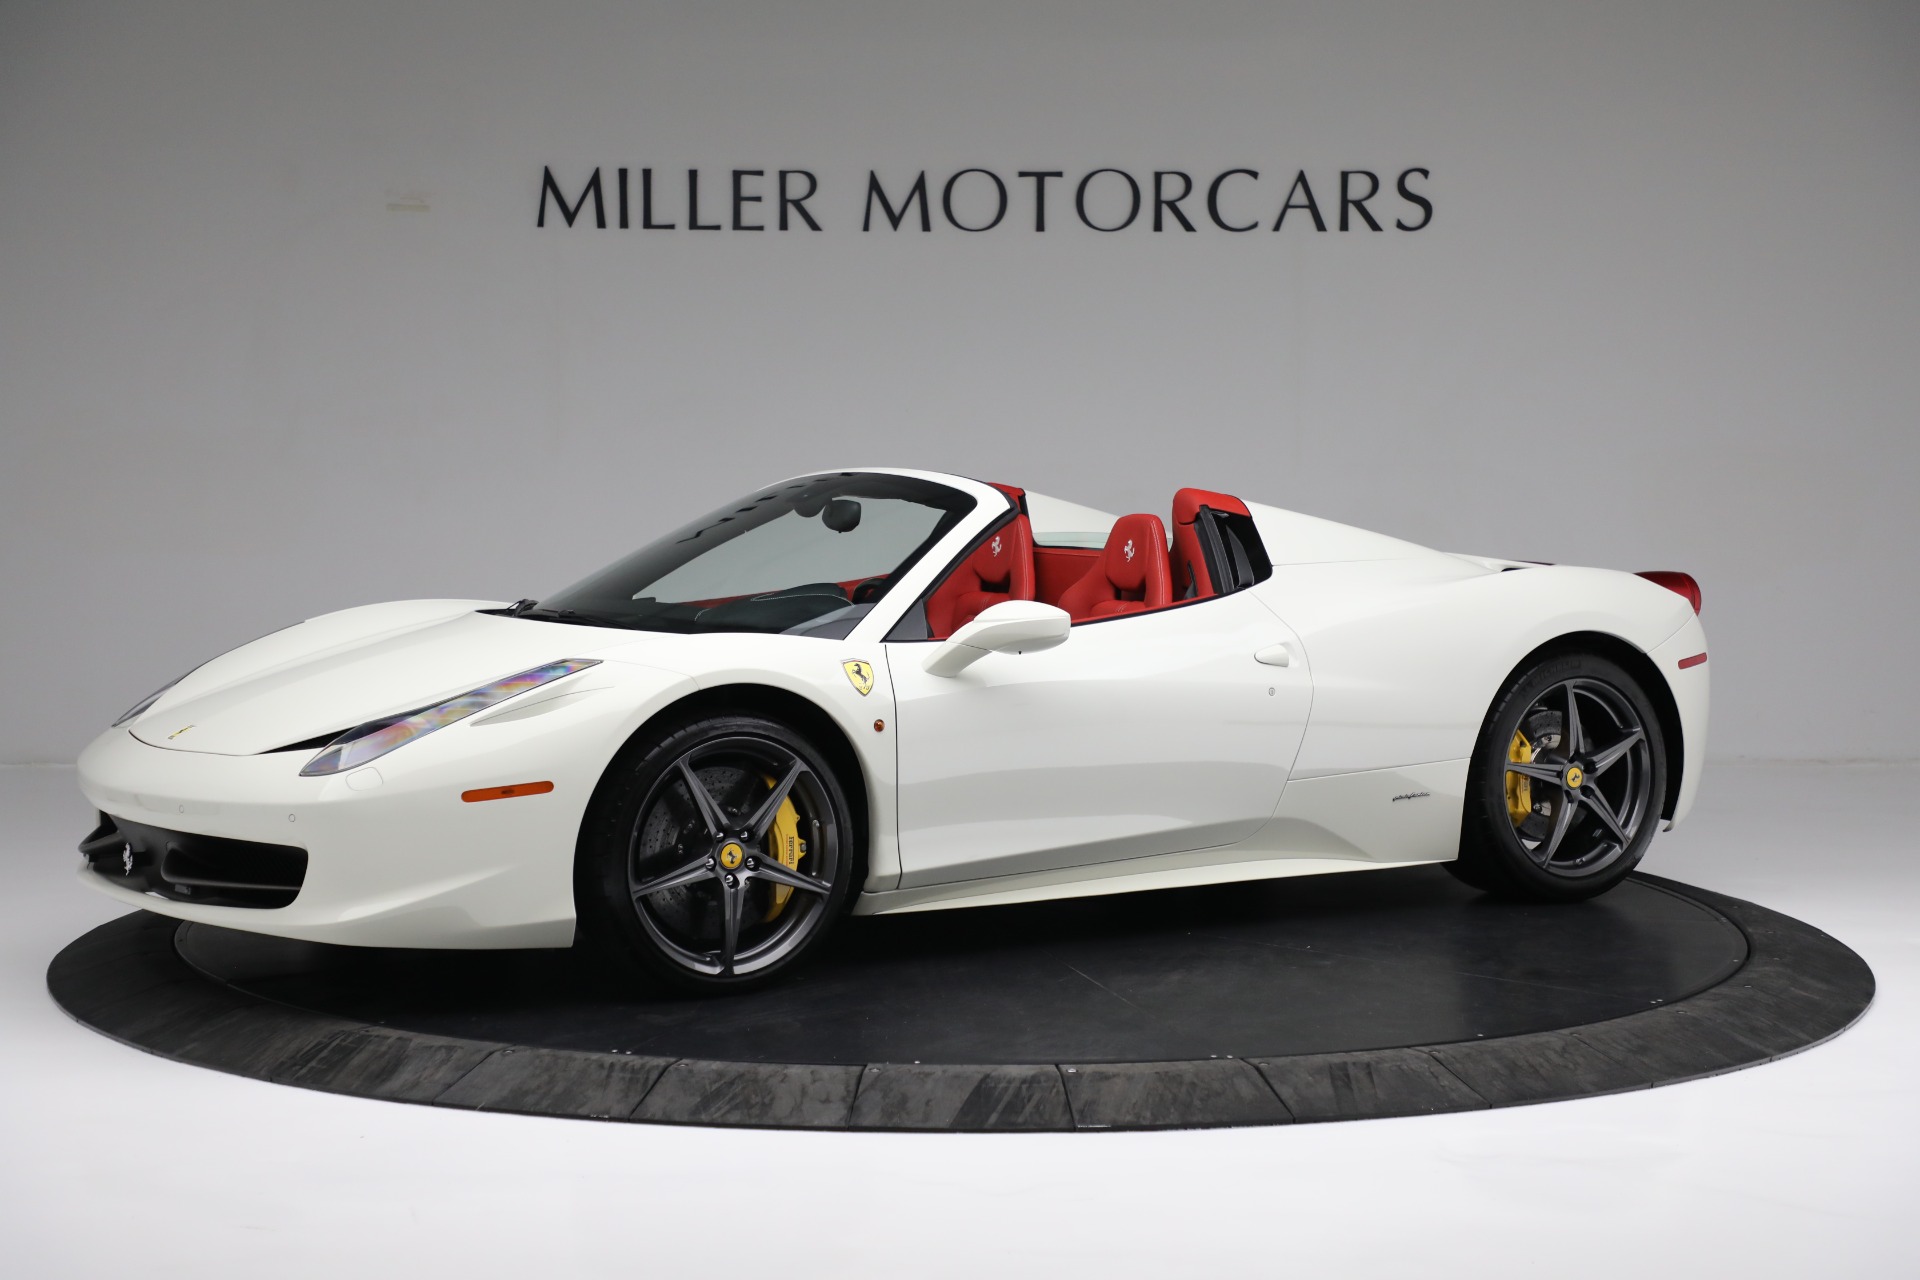 Pre-Owned 2012 Ferrari 458 Spider For () | Miller Motorcars Stock #4936